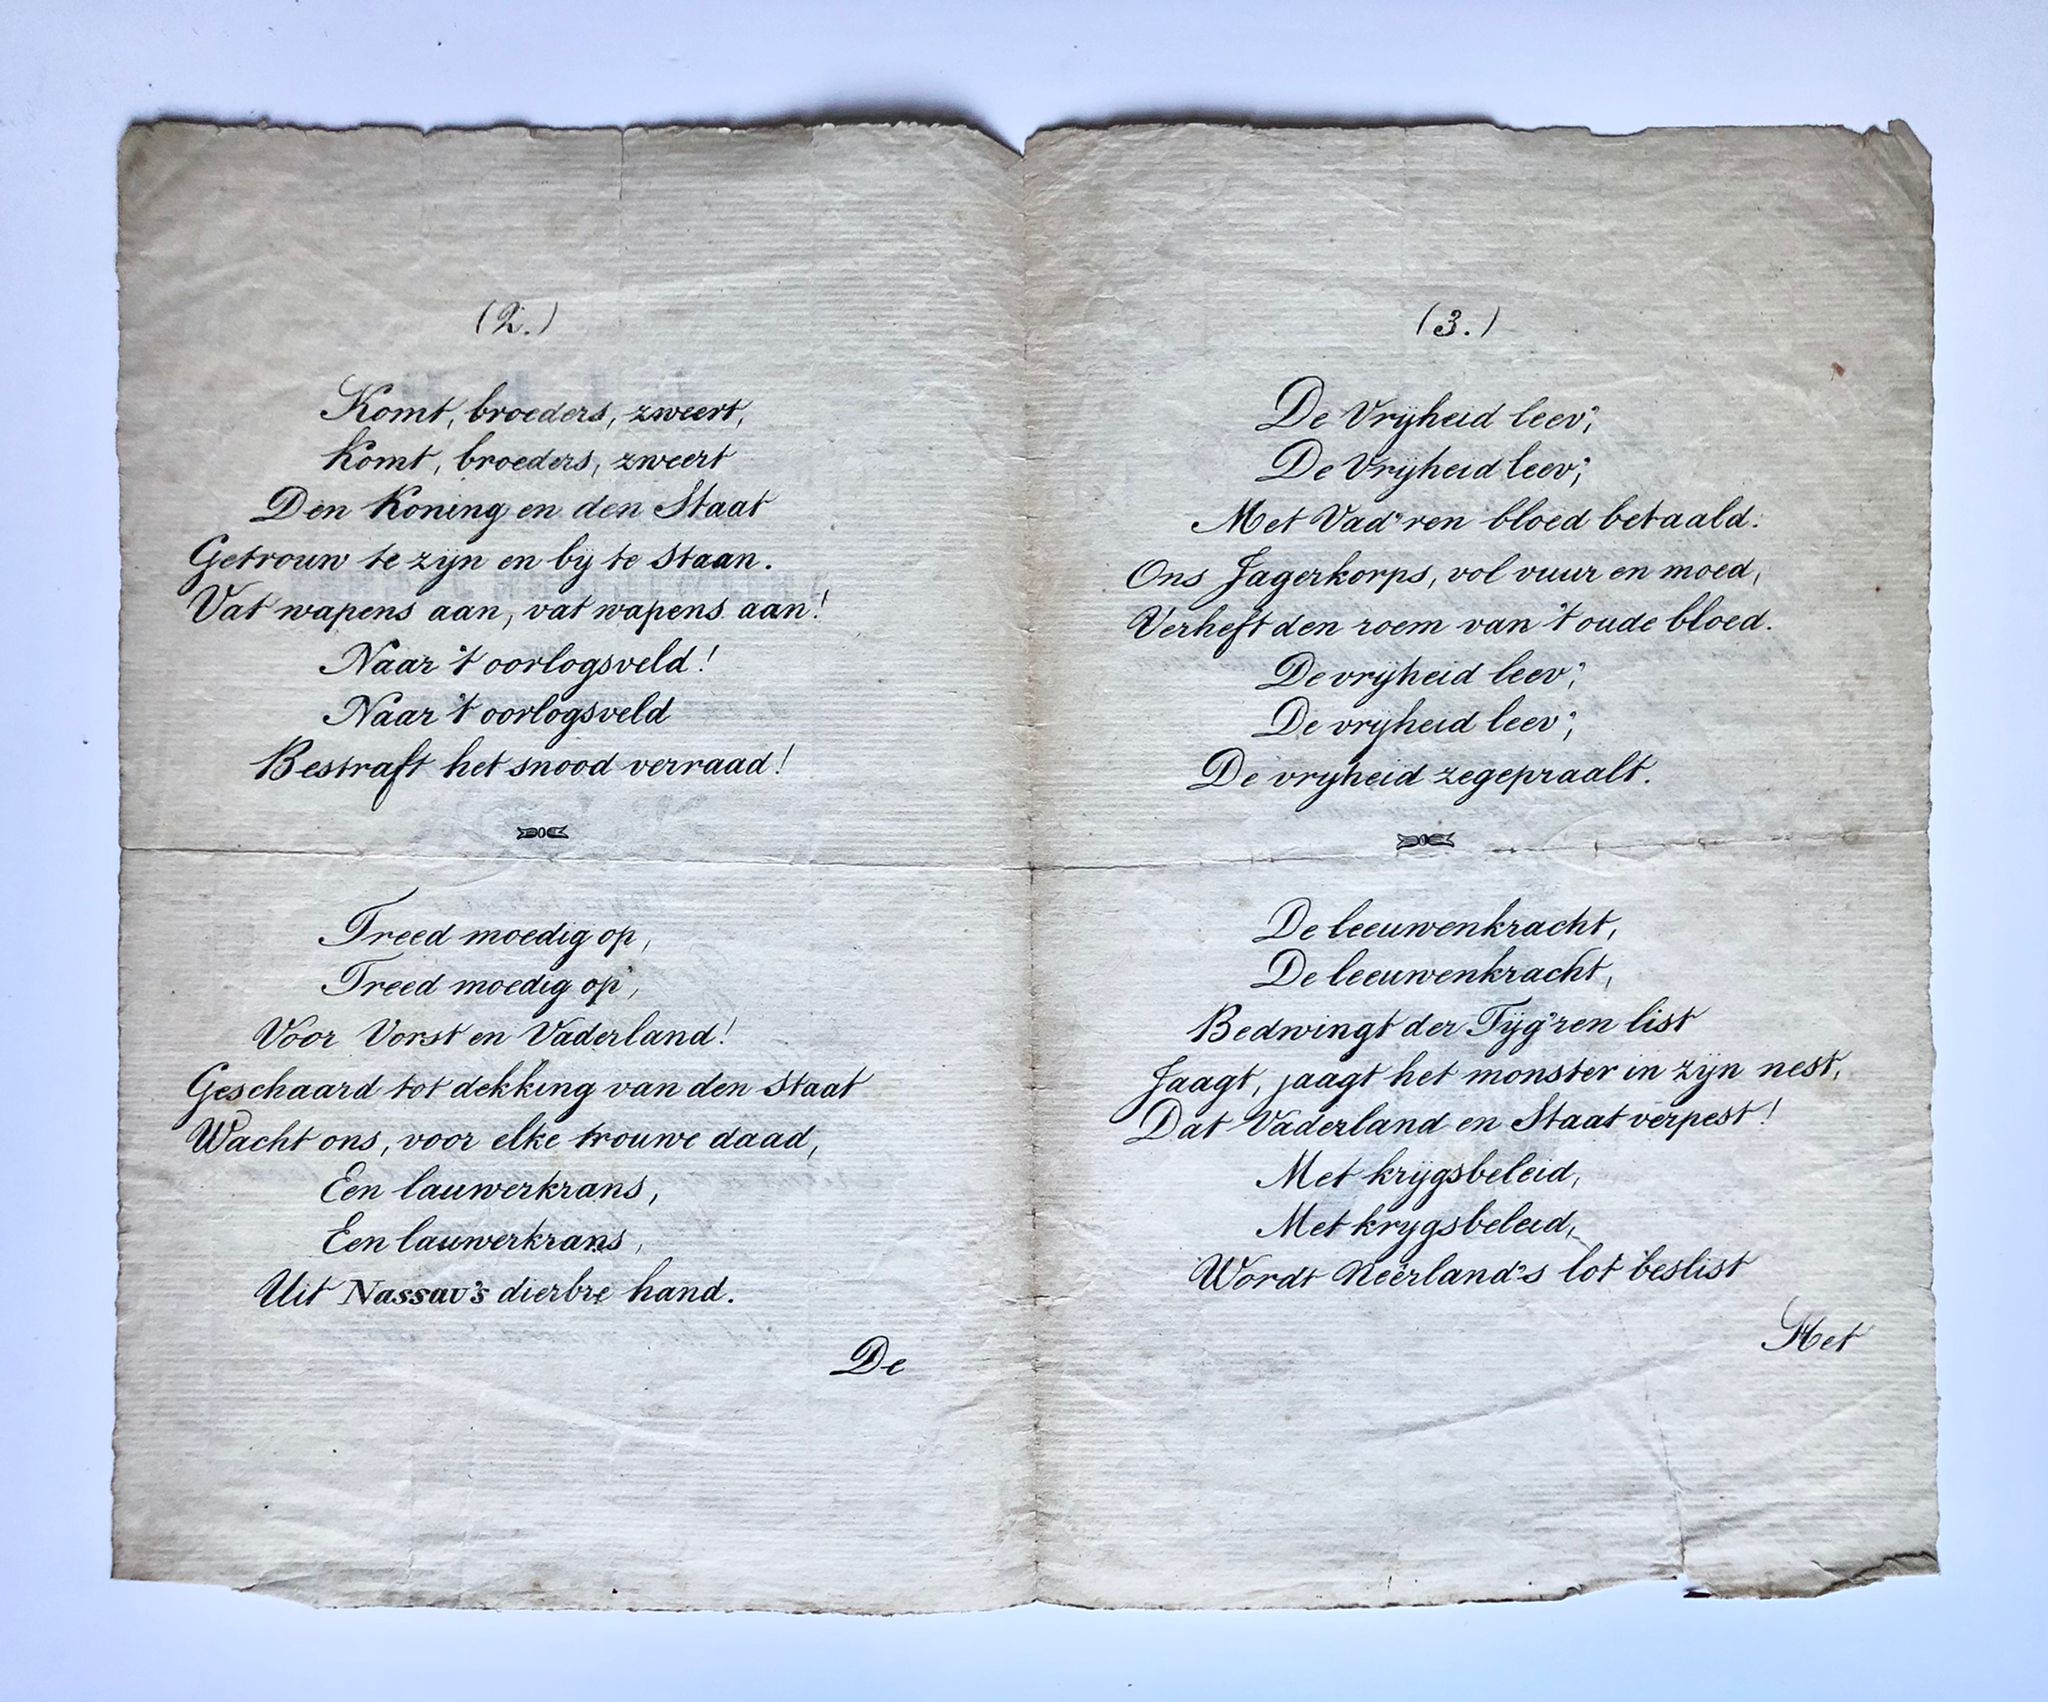 [Rare printed song, 1830] Lied voor de Noord-Hollandsche Vrijwillige jagers. Door J. van Straaten Az., Lid van genoemd Korps, [s.n. Amsterdam, 1830], 4 pp.